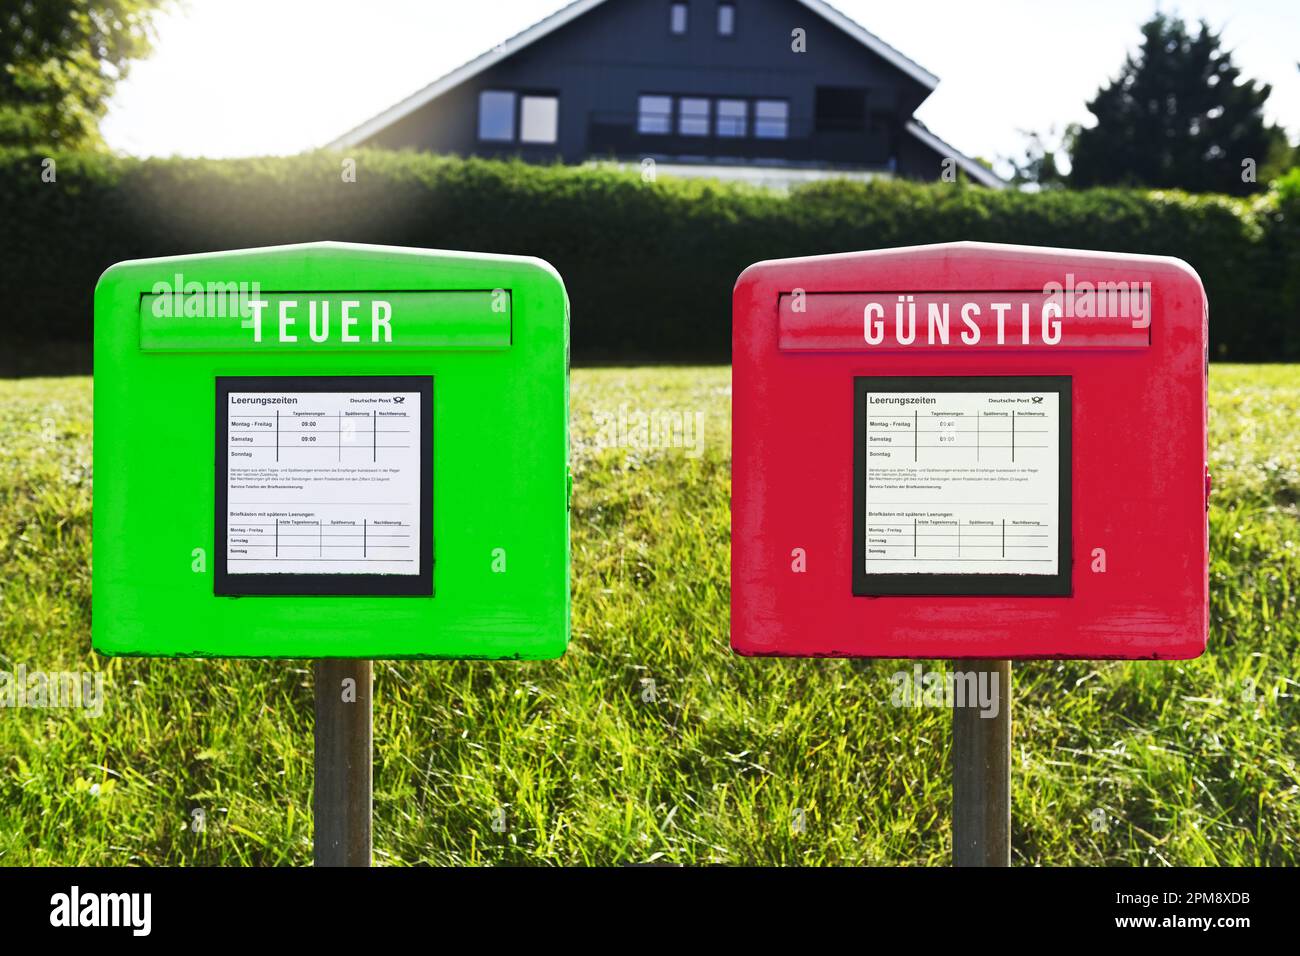 FOTOMONTAGE, Grüner und roter Briefkasten mit Aufschrift teuer und günstig, Symbolfoto für eine Zwei-Klassen-Briefzustellung Stock Photo